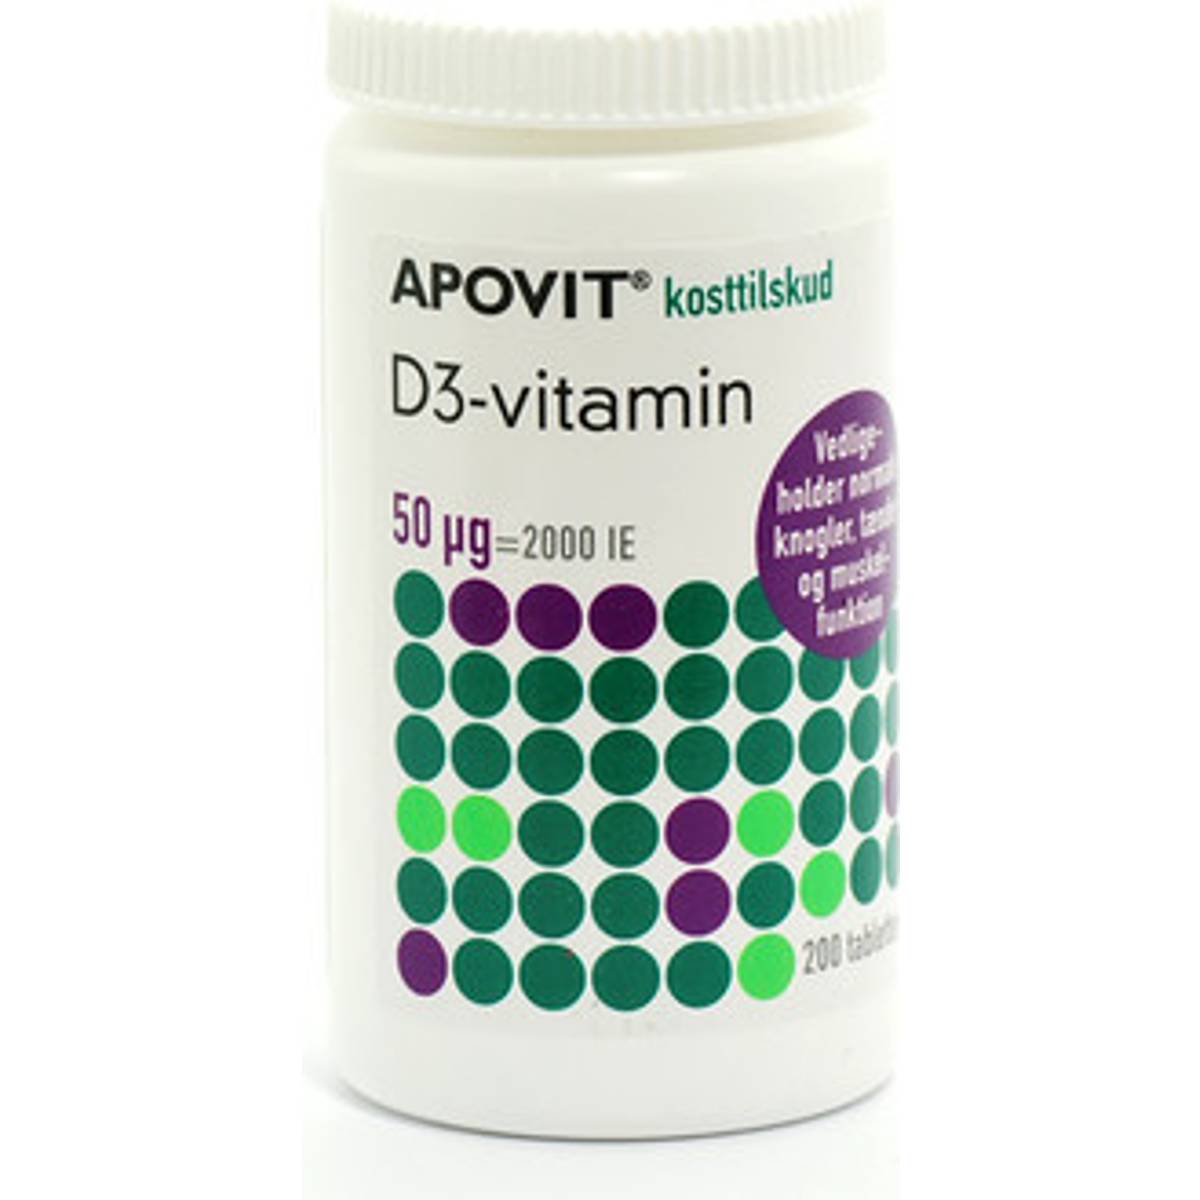 Apovit D-Vitaminer Kosttilskud (11 produkter) • Se billigste pris nu »